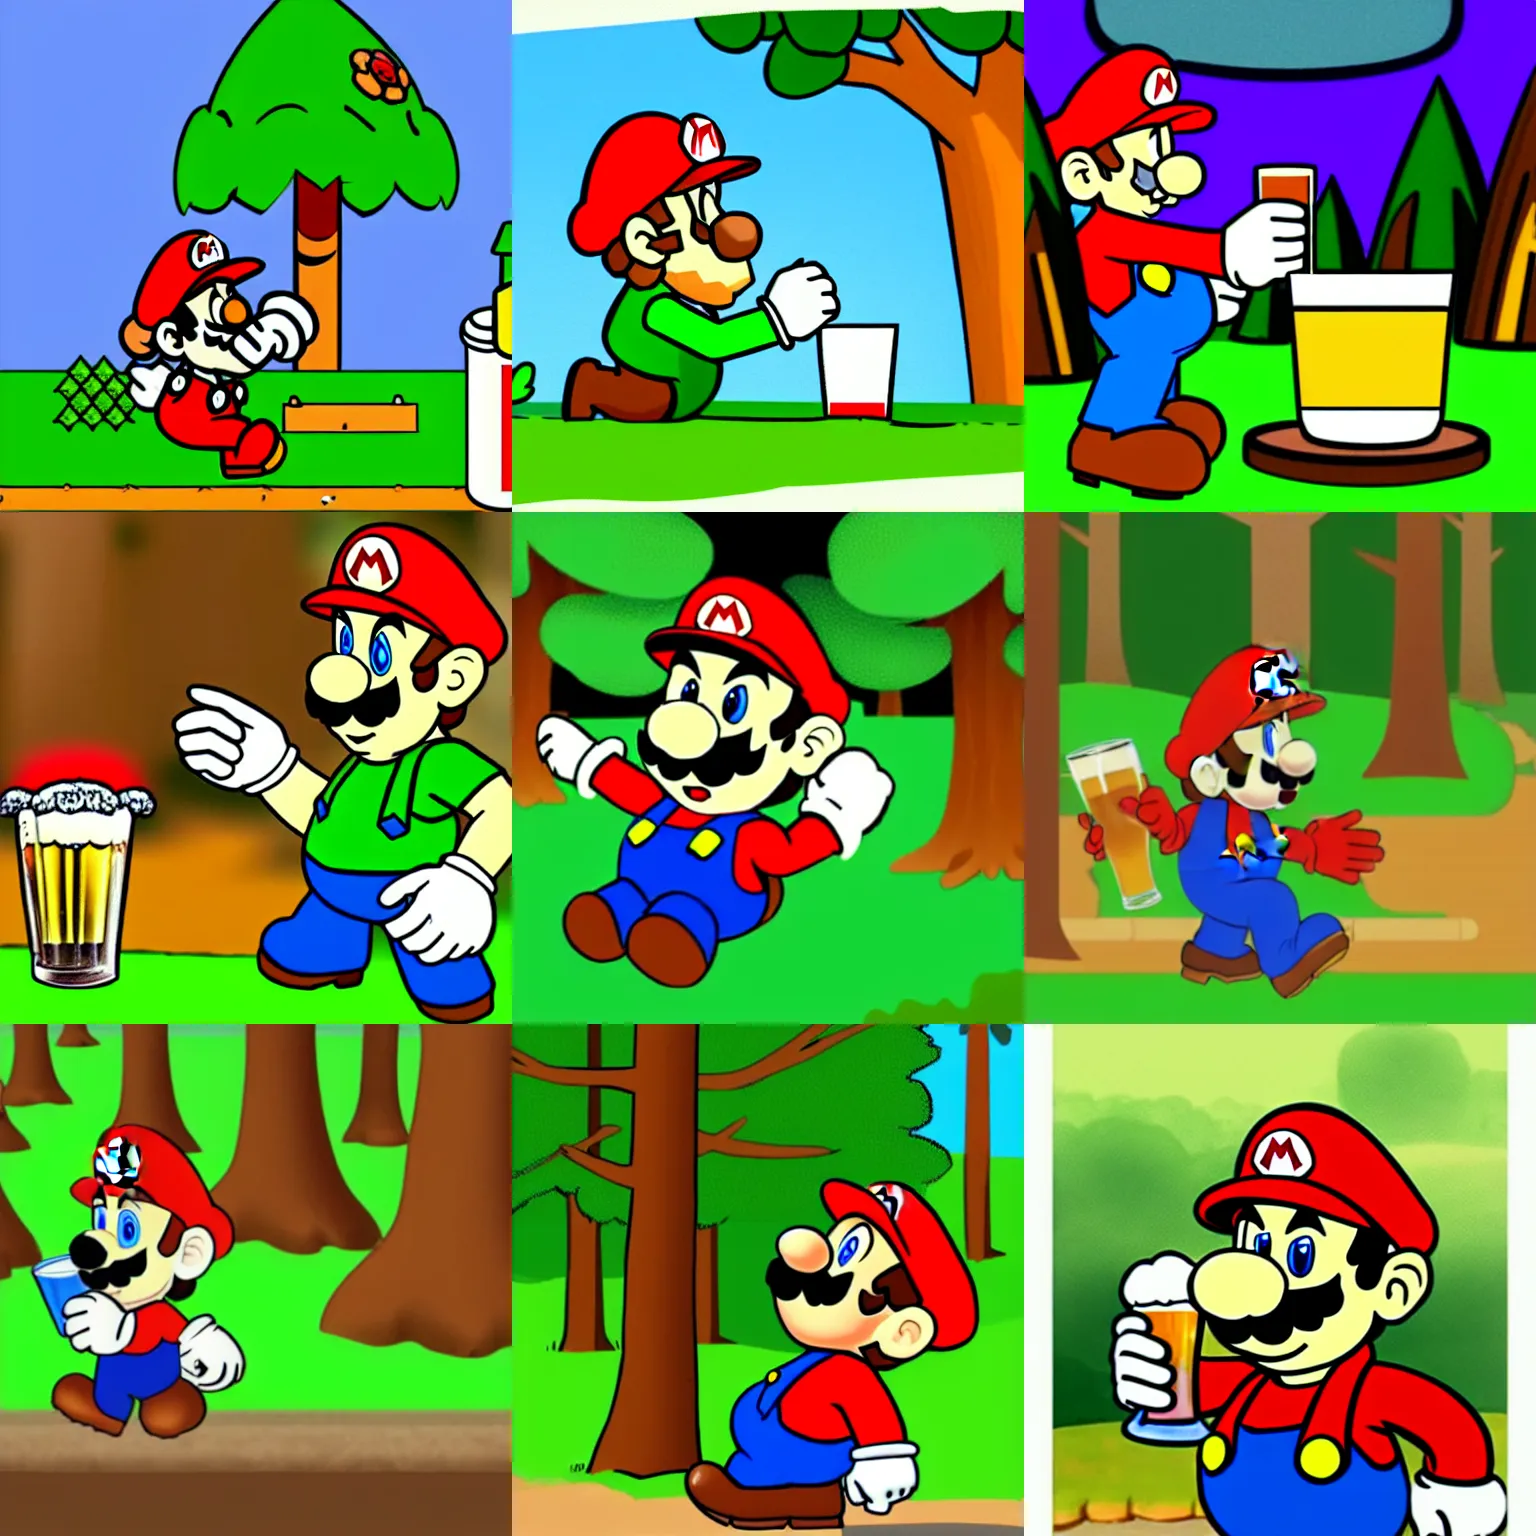 Prompt: drunk mario drinks beer in forest, cartoon